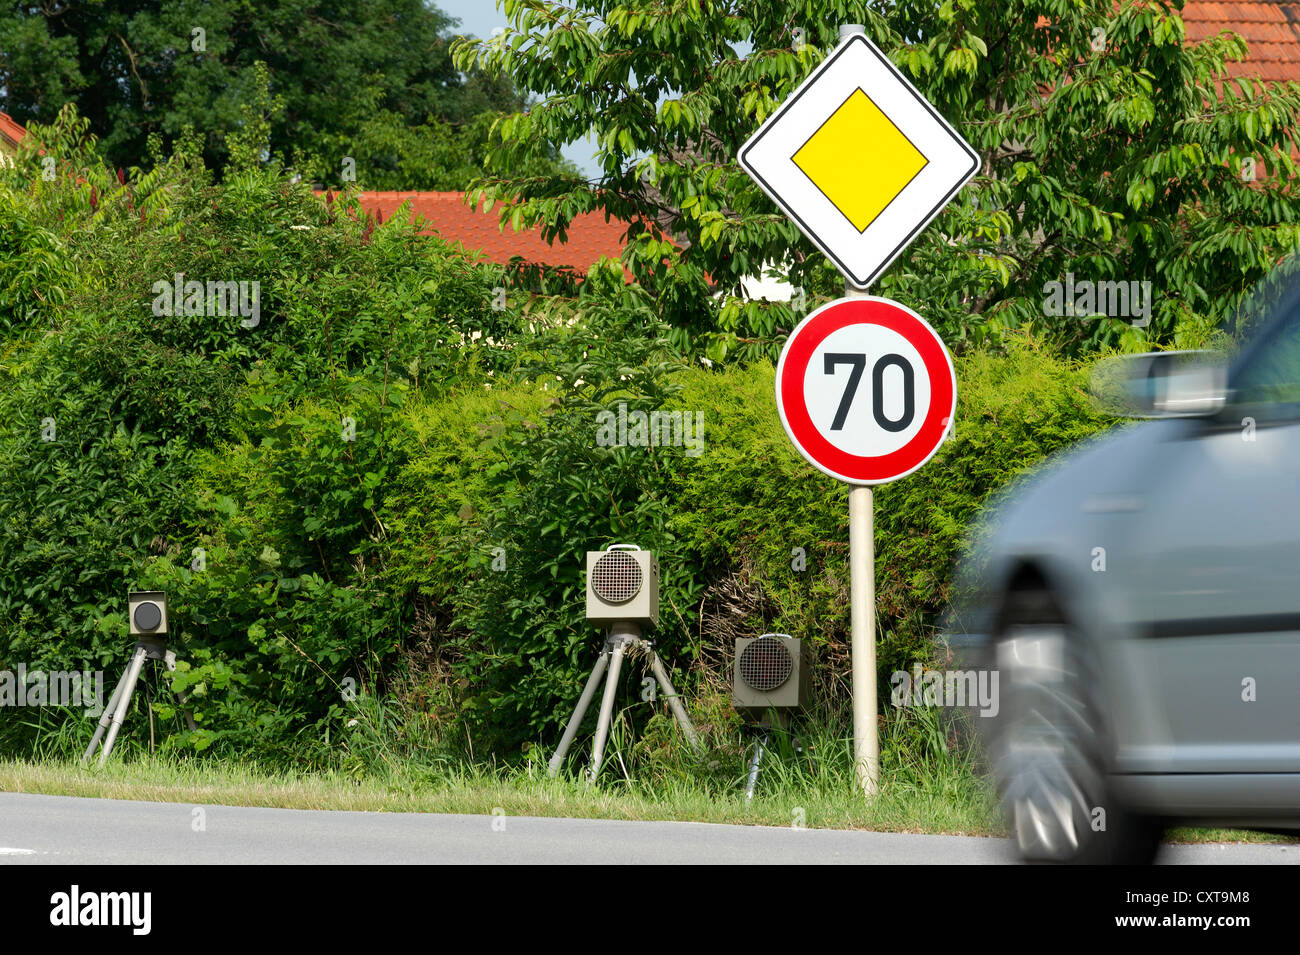 La velocità e la fotocamera a infrarossi unità flash, velocità trappola, mobile unità radar per misurare la velocità, Landau, Baviera, PublicGround Foto Stock